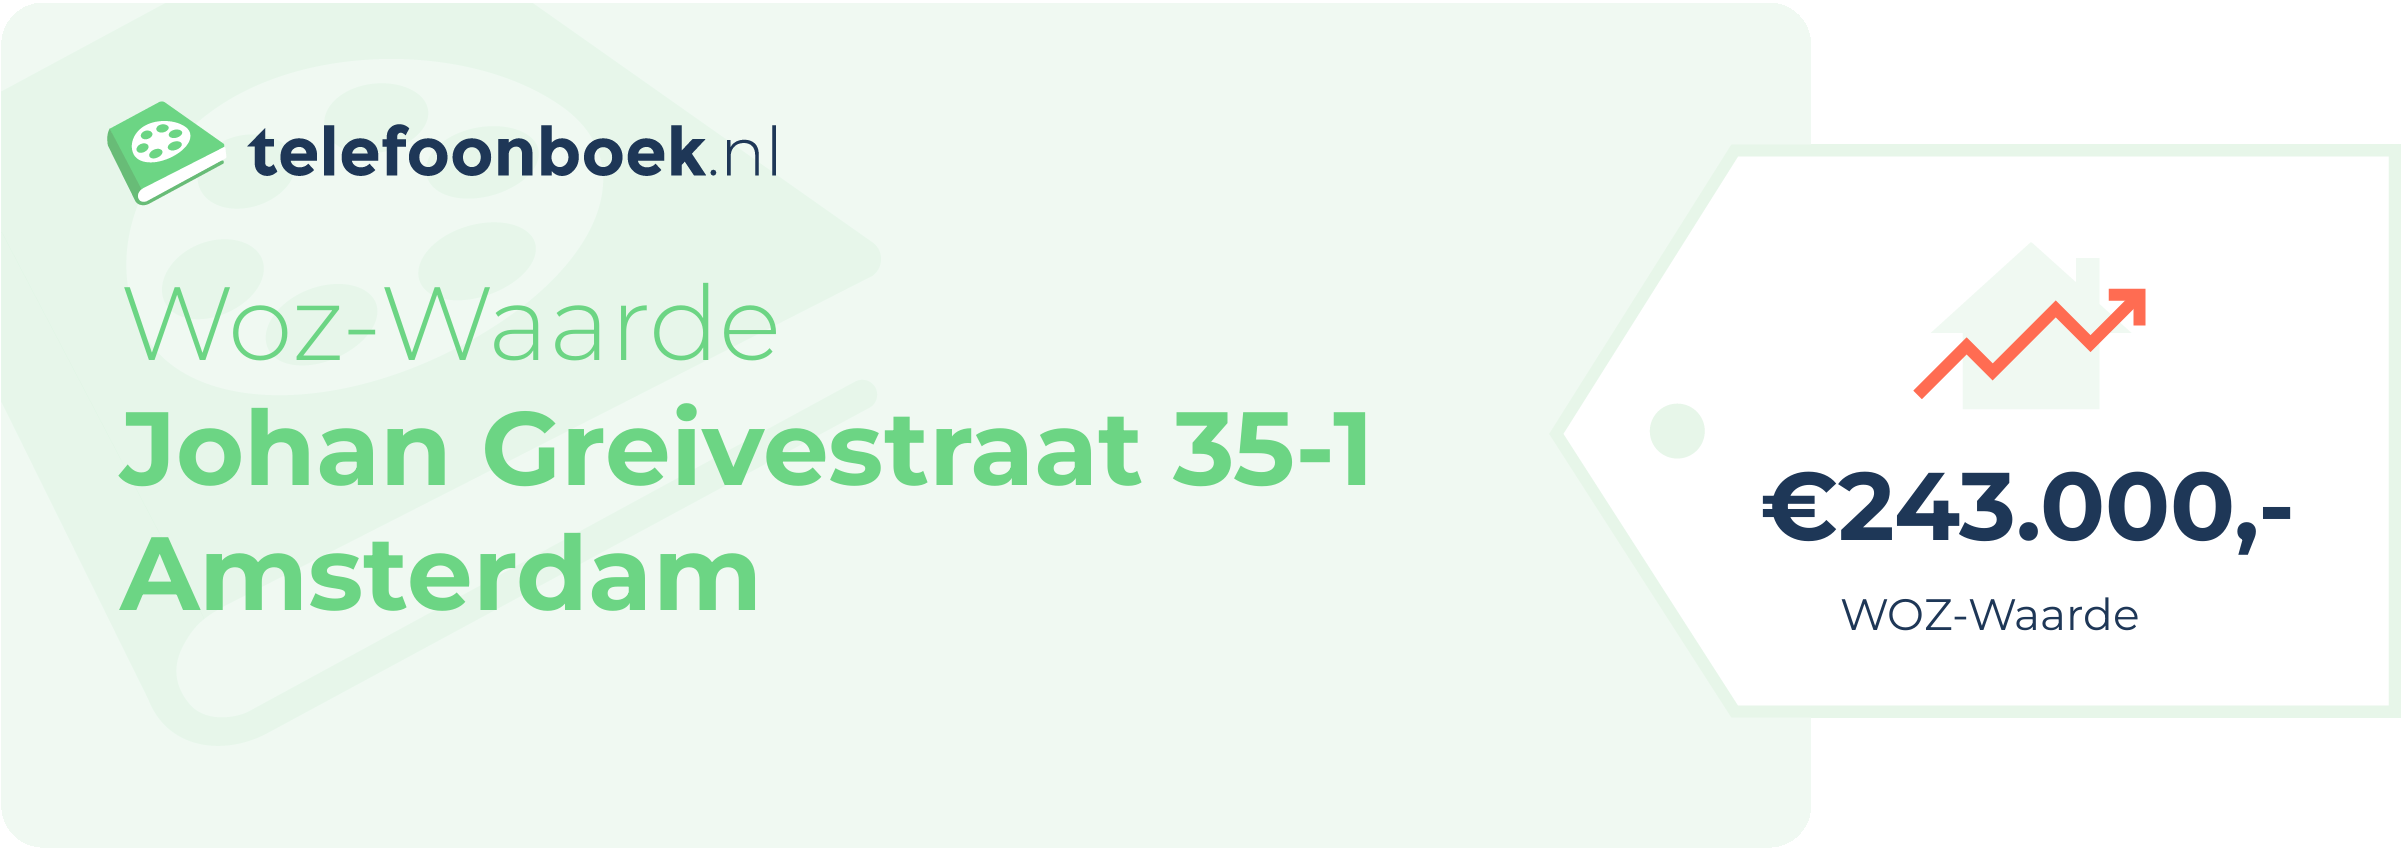 WOZ-waarde Johan Greivestraat 35-1 Amsterdam